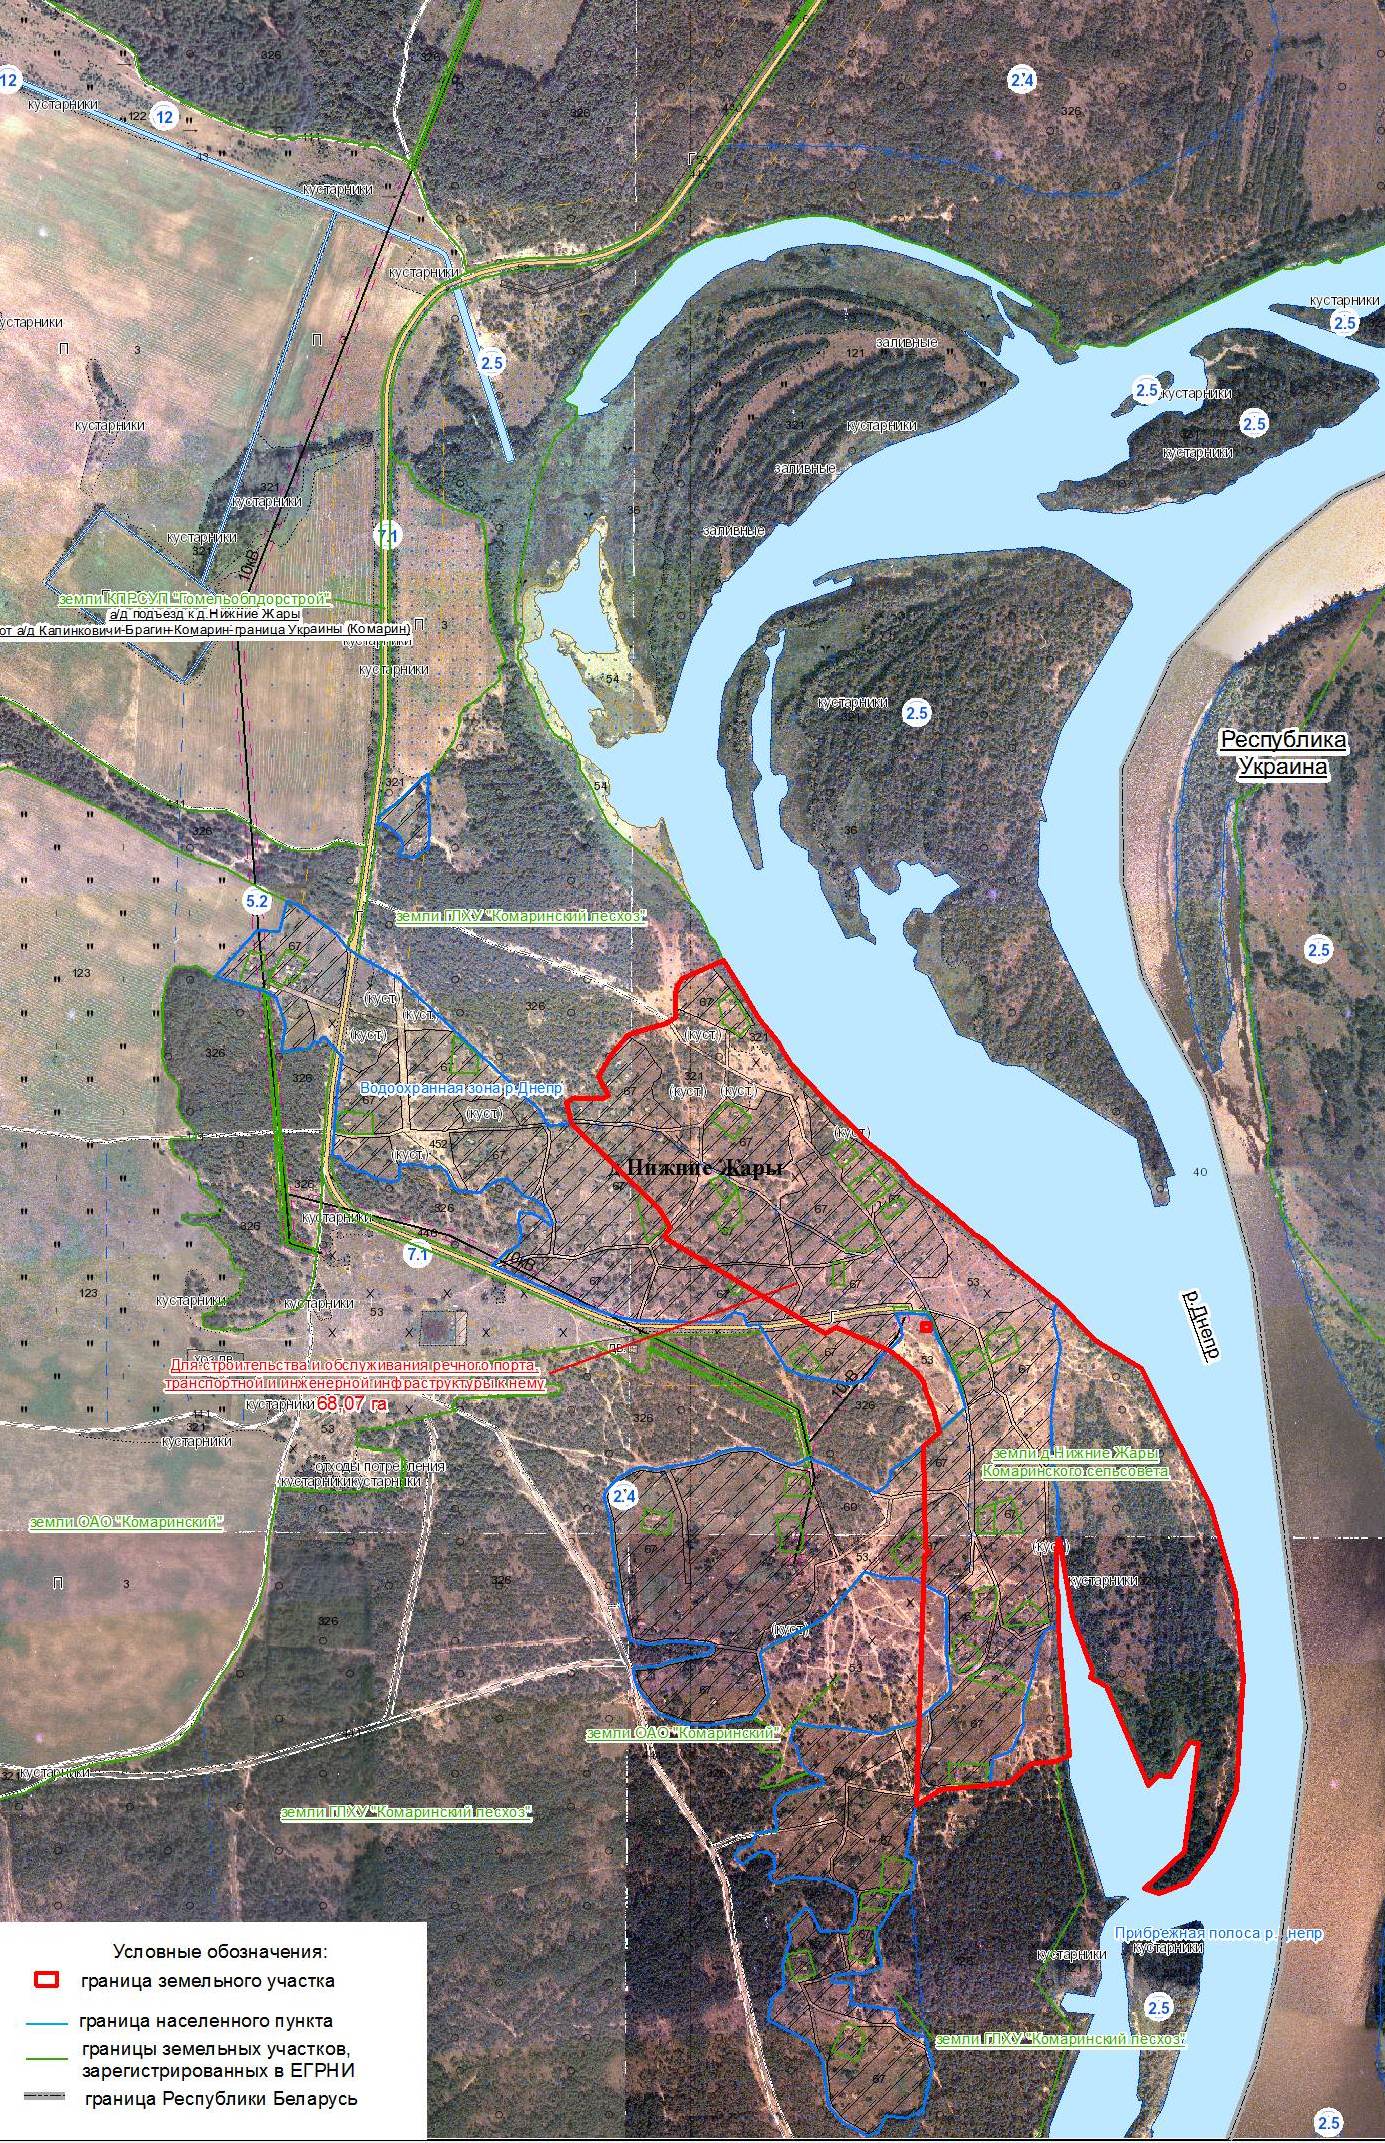 Ситуационная схема размещения земельного участка, где планируется строительство порта в деревне Нижние Жары